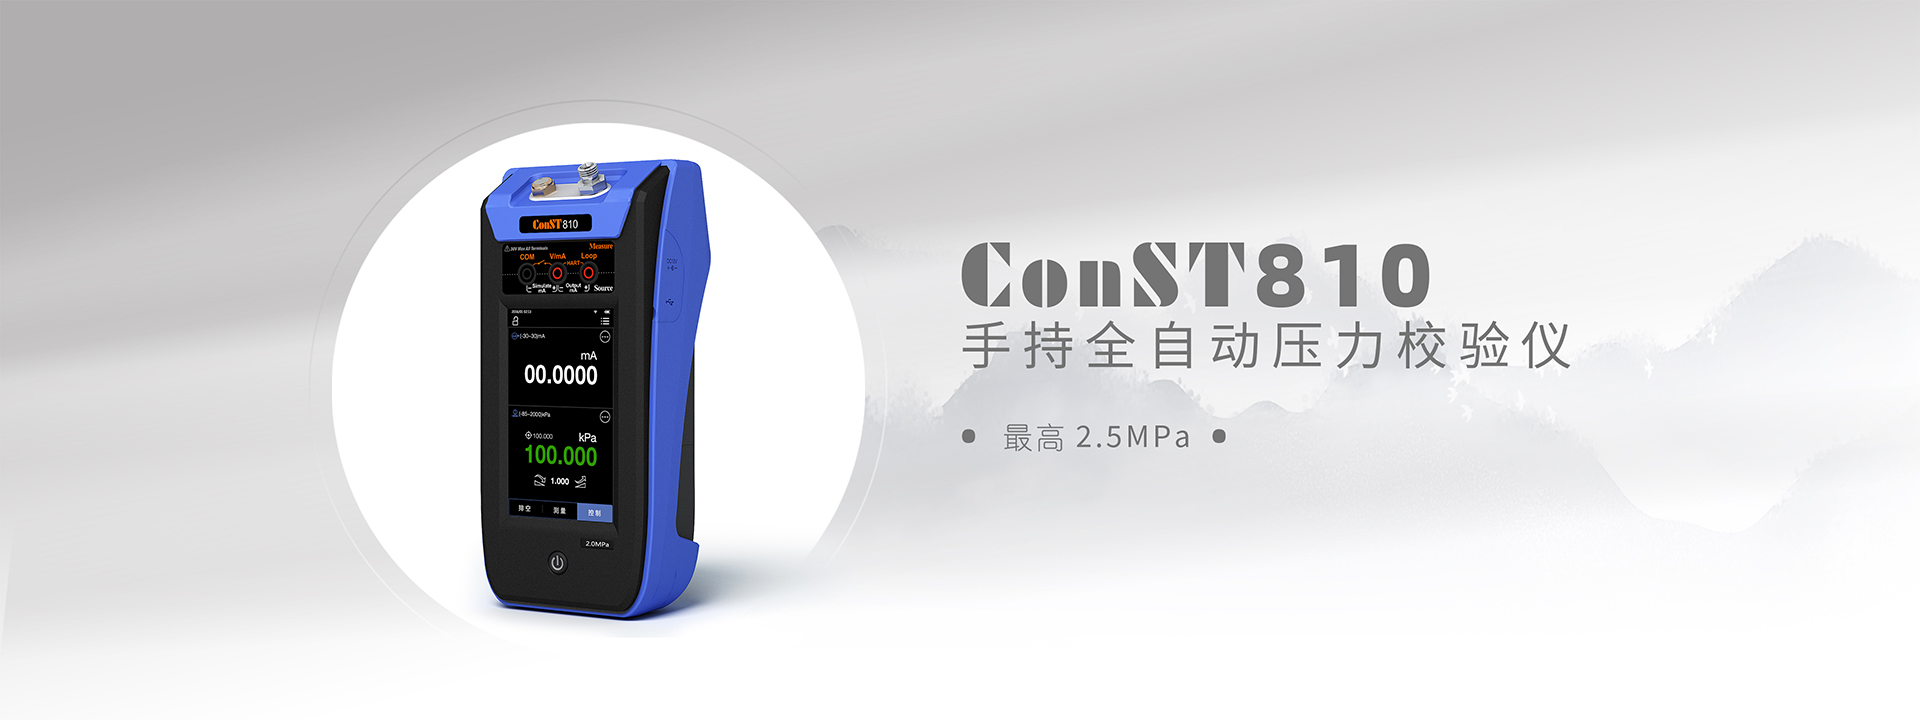 ConST810手持全自動(dòng)壓力校驗儀